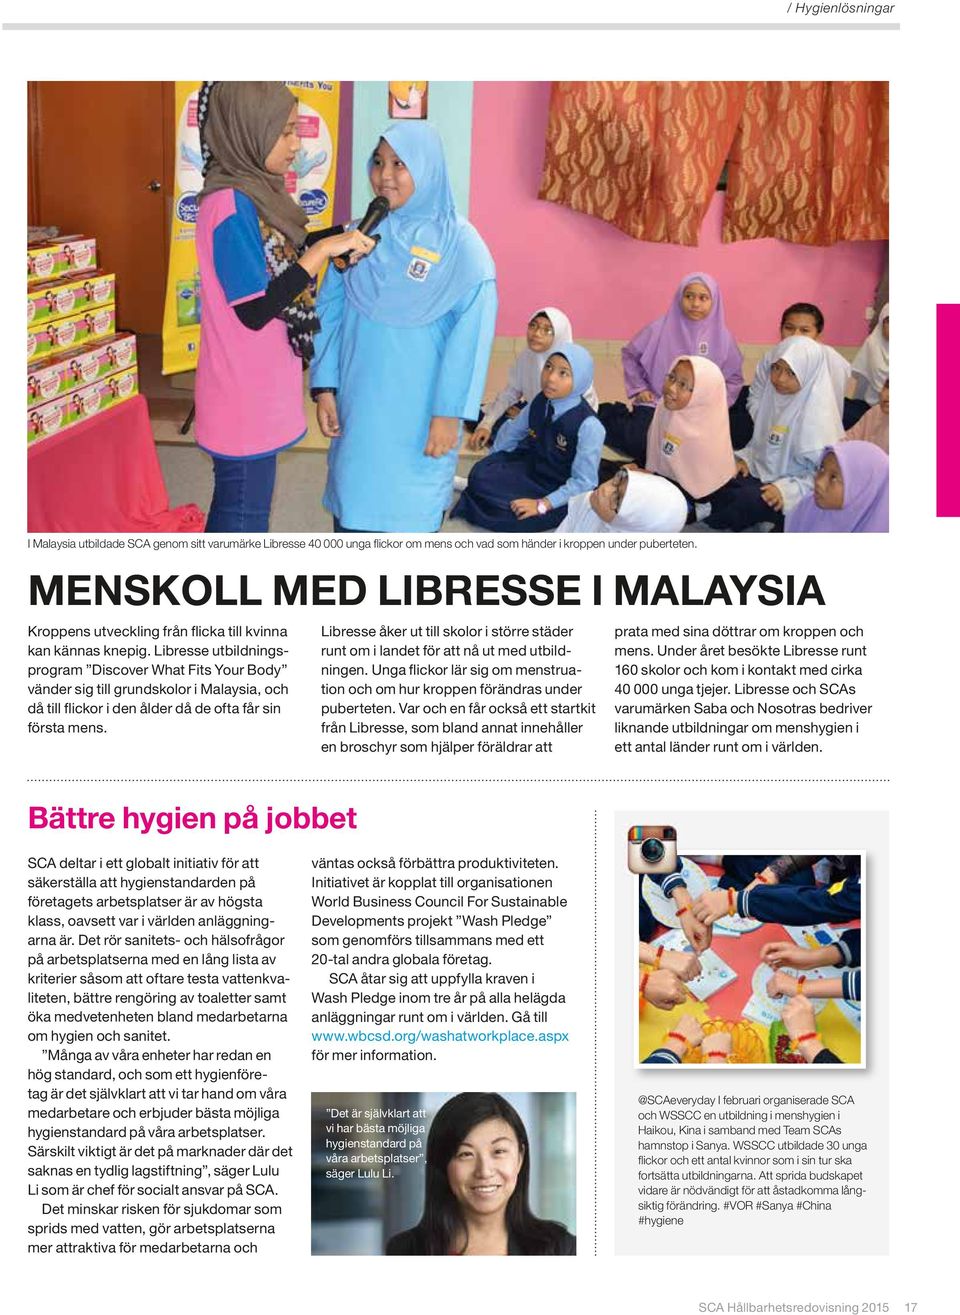 Libresse utbildningsprogram Discover What Fits Your Body vänder sig till grundskolor i Malaysia, och då till flickor i den ålder då de ofta får sin första mens.